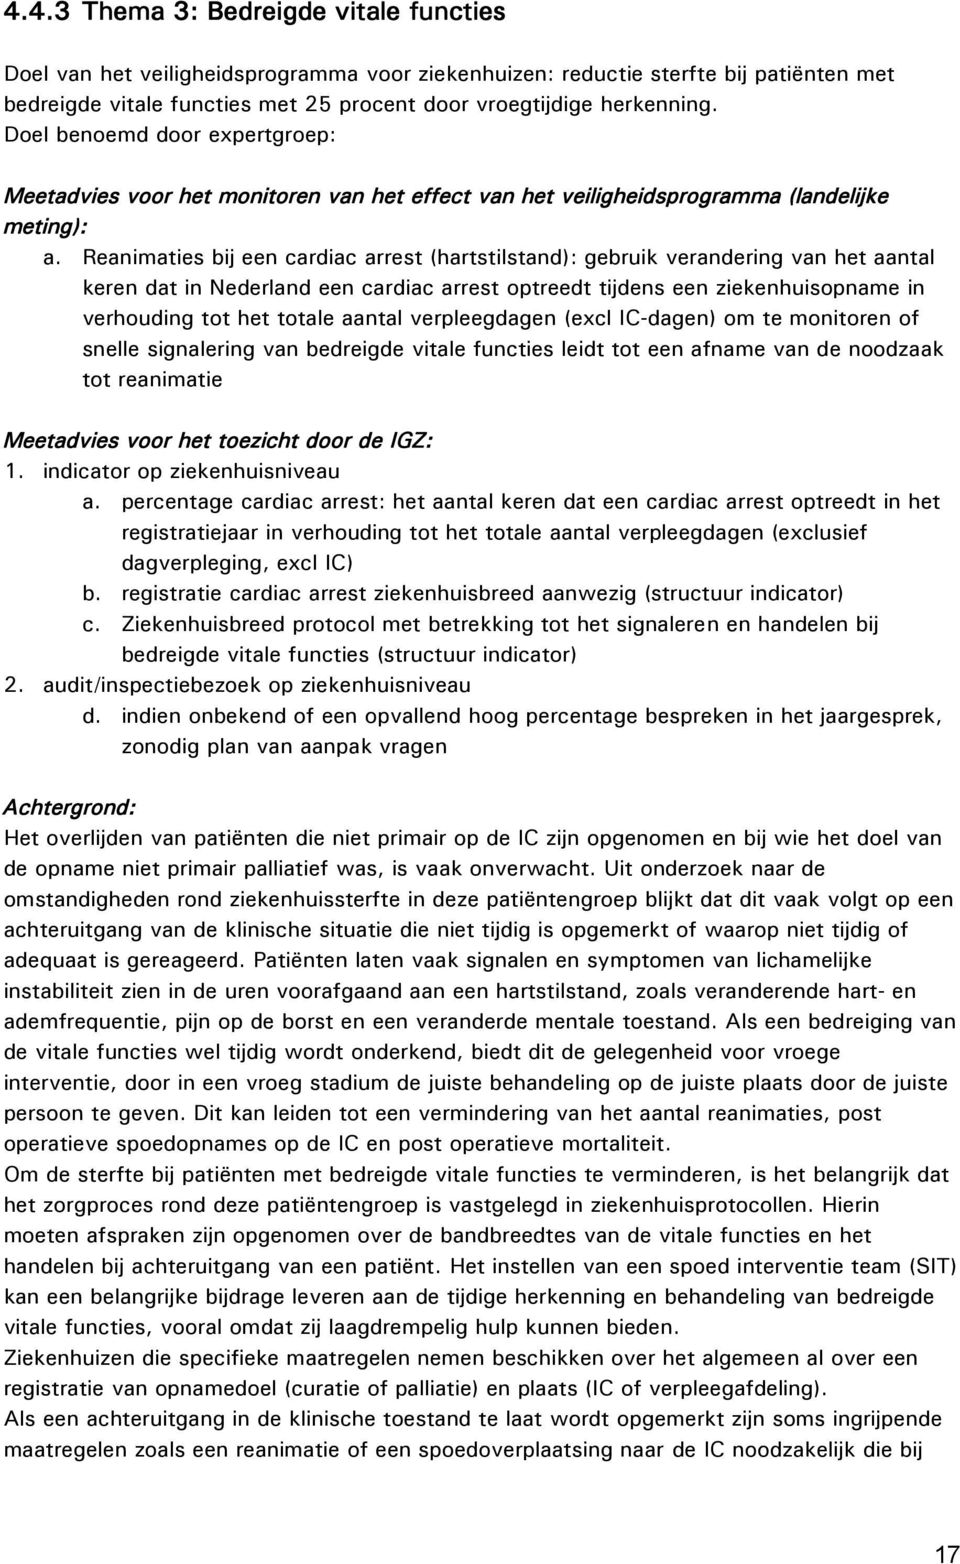 Reanimaties bij een cardiac arrest (hartstilstand): gebruik verandering van het aantal keren dat in Nederland een cardiac arrest optreedt tijdens een ziekenhuisopname in verhouding tot het totale